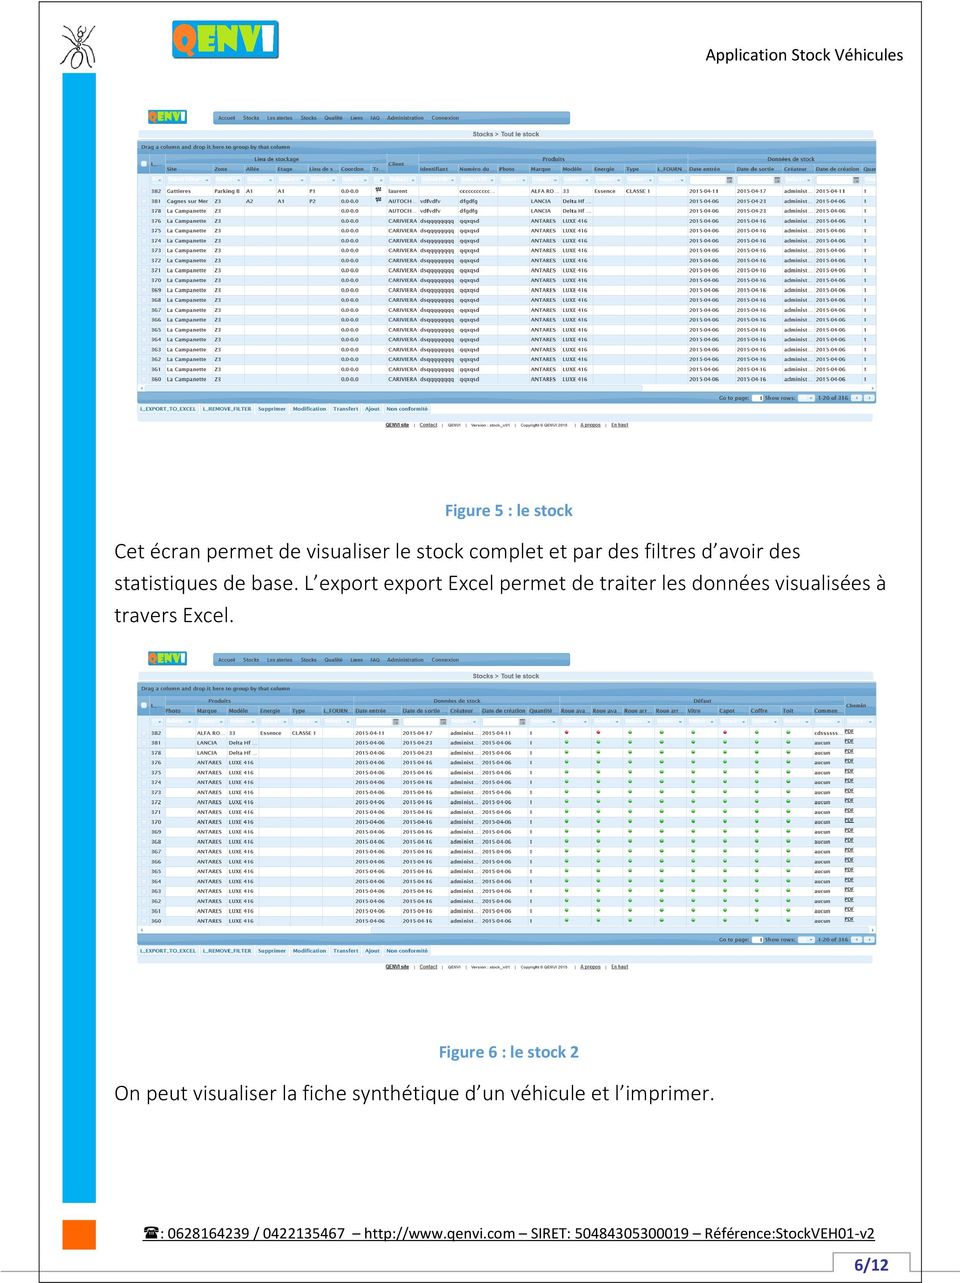 L export export Excel permet de traiter les données visualisées à travers